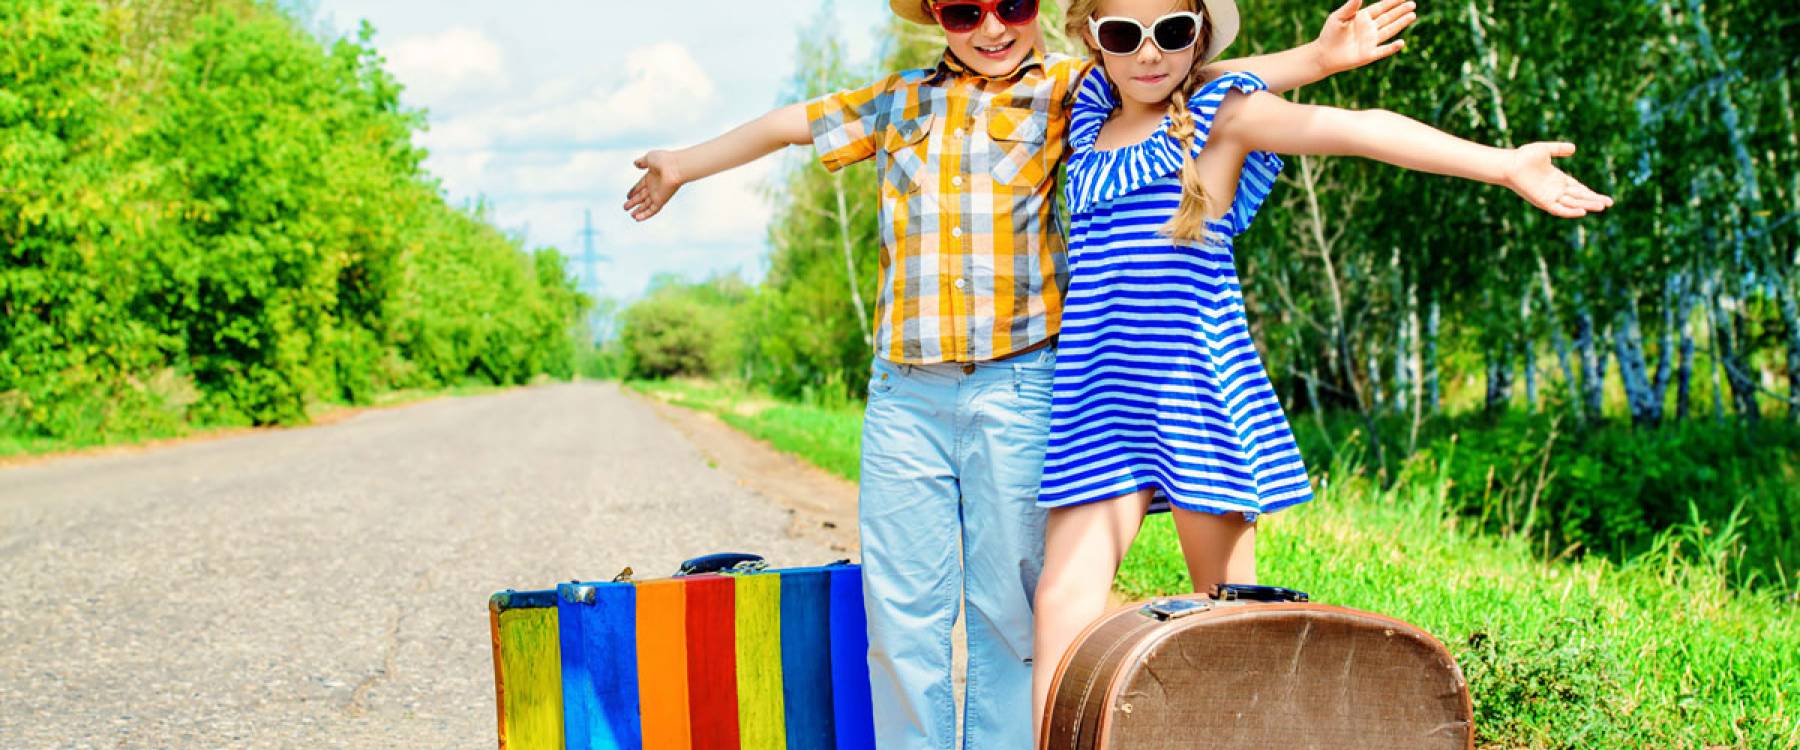 4 tipy, ako si naplánovať rodinnú dovolenku s deťmi